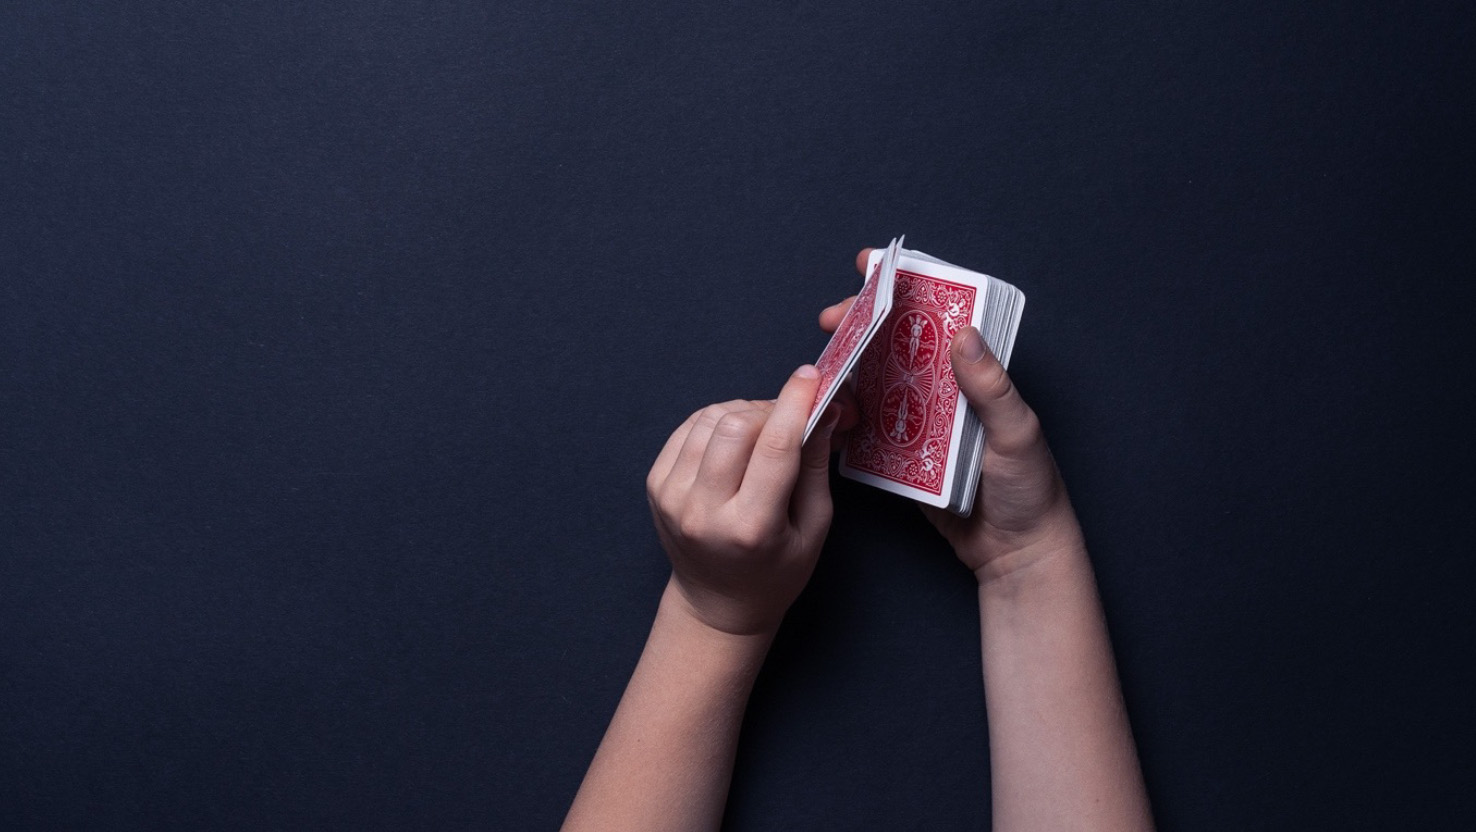 Ein Kind legt vier Asse verdeckt auf den Kartenstapel.